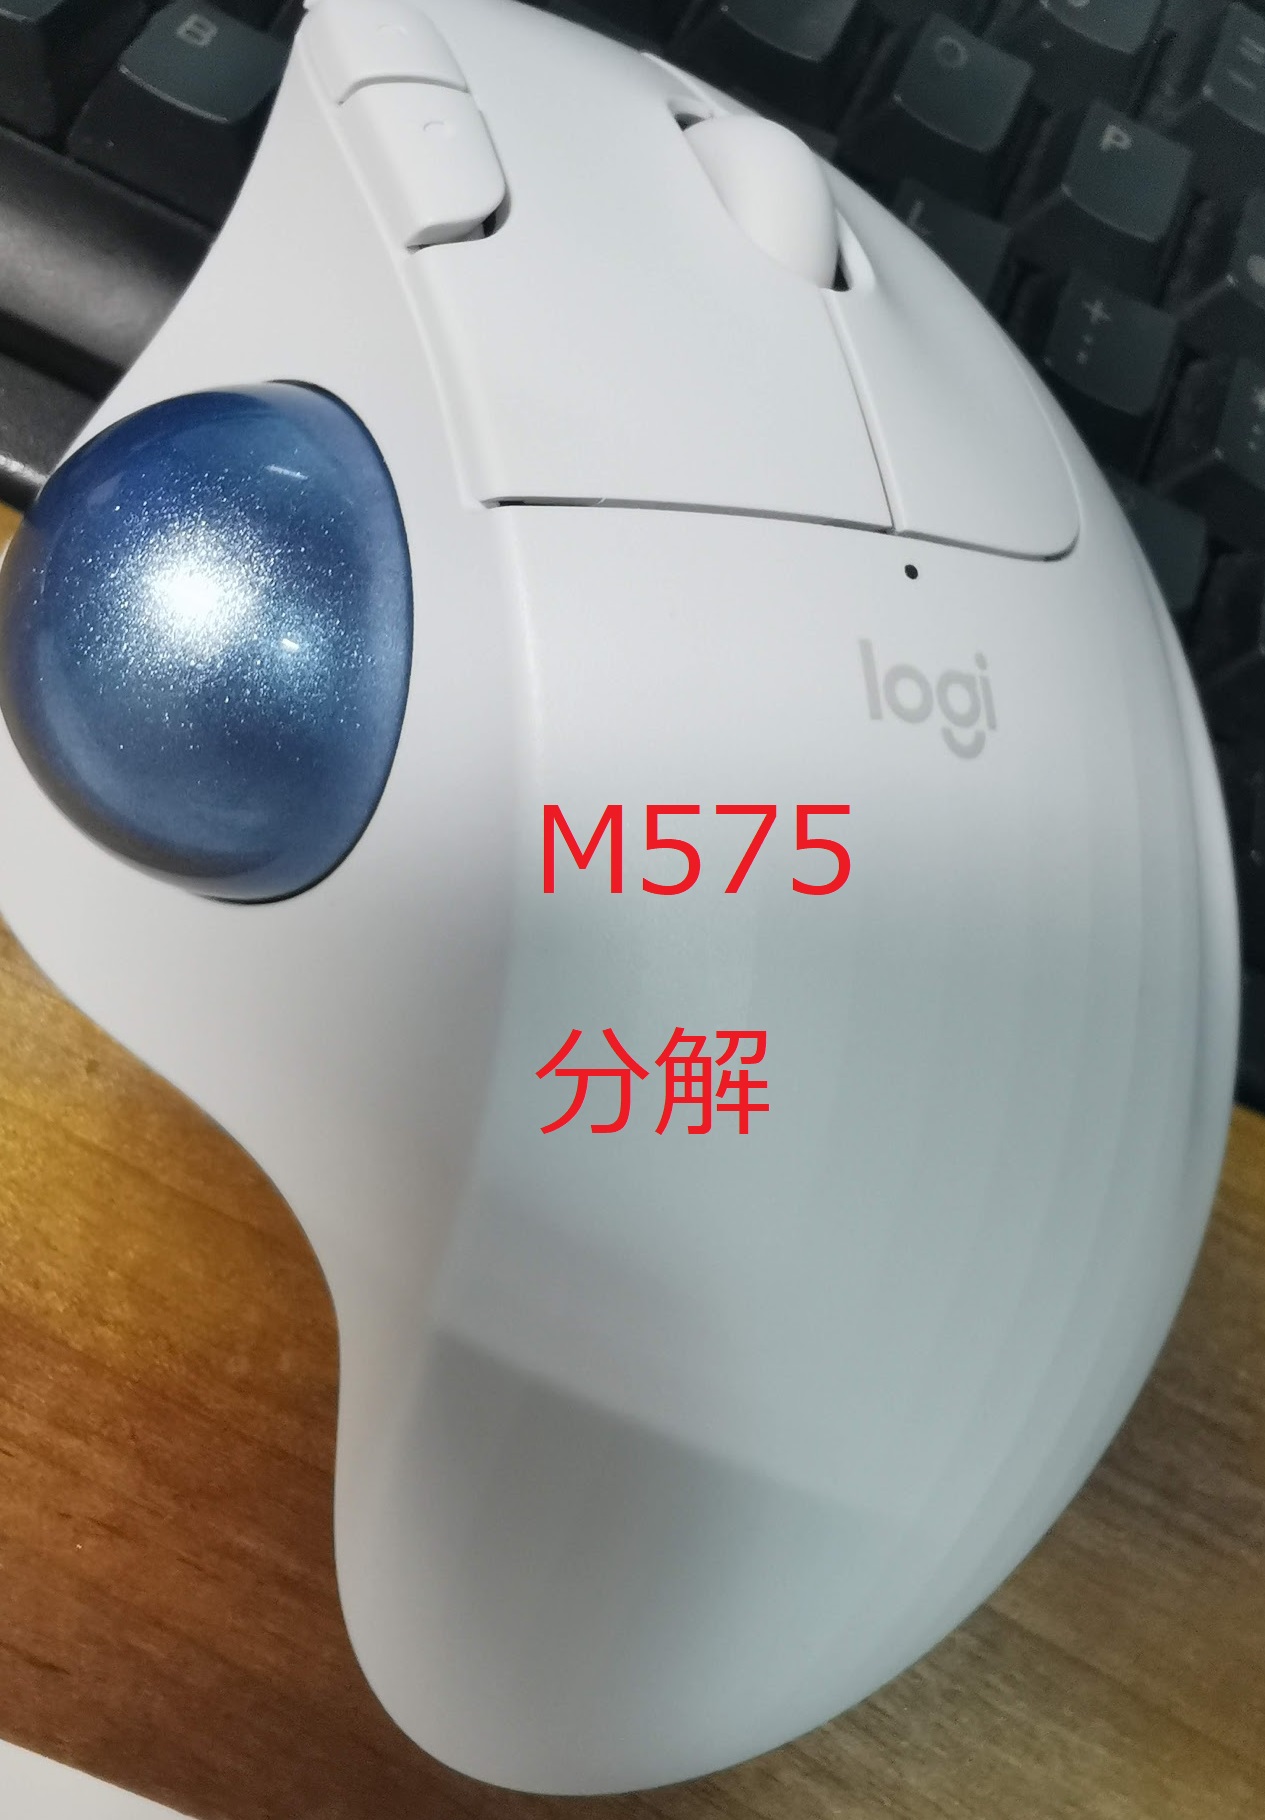 logicool M575S ワイヤレストラックボールマウス 静音改造品